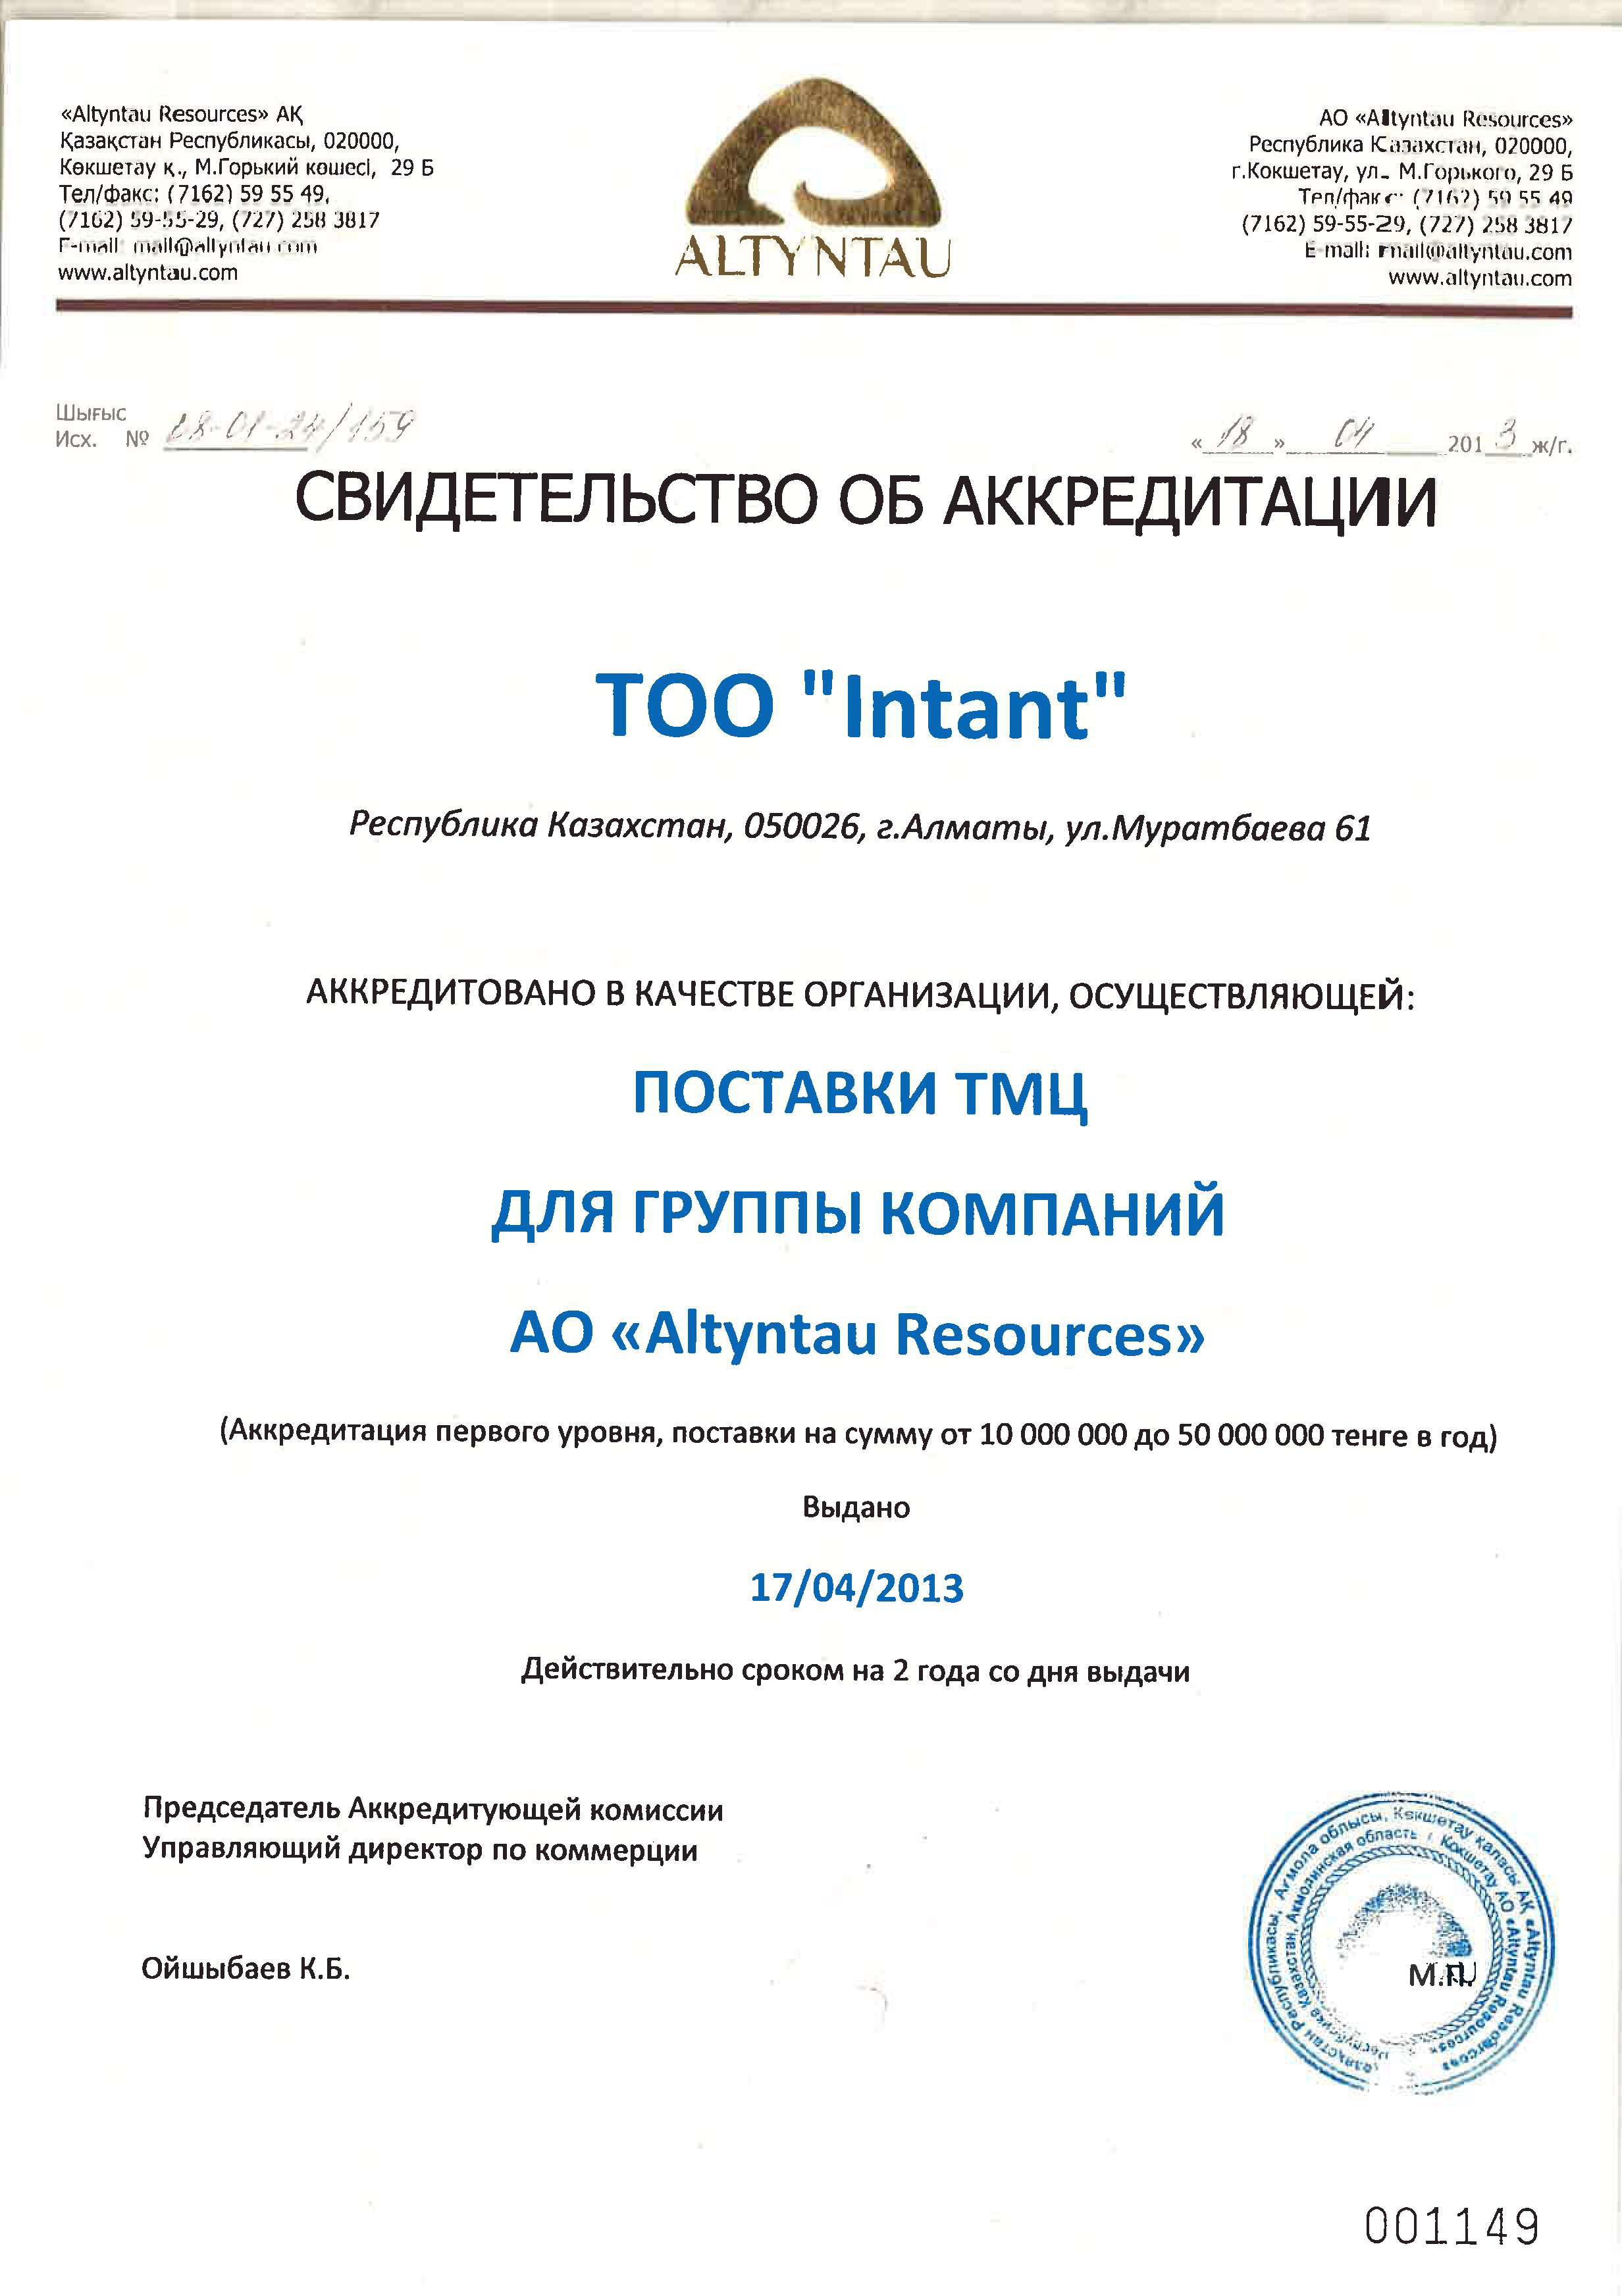 Свидетельство об аккредитации ТОО Интант-АО Altyntau Resources 2013